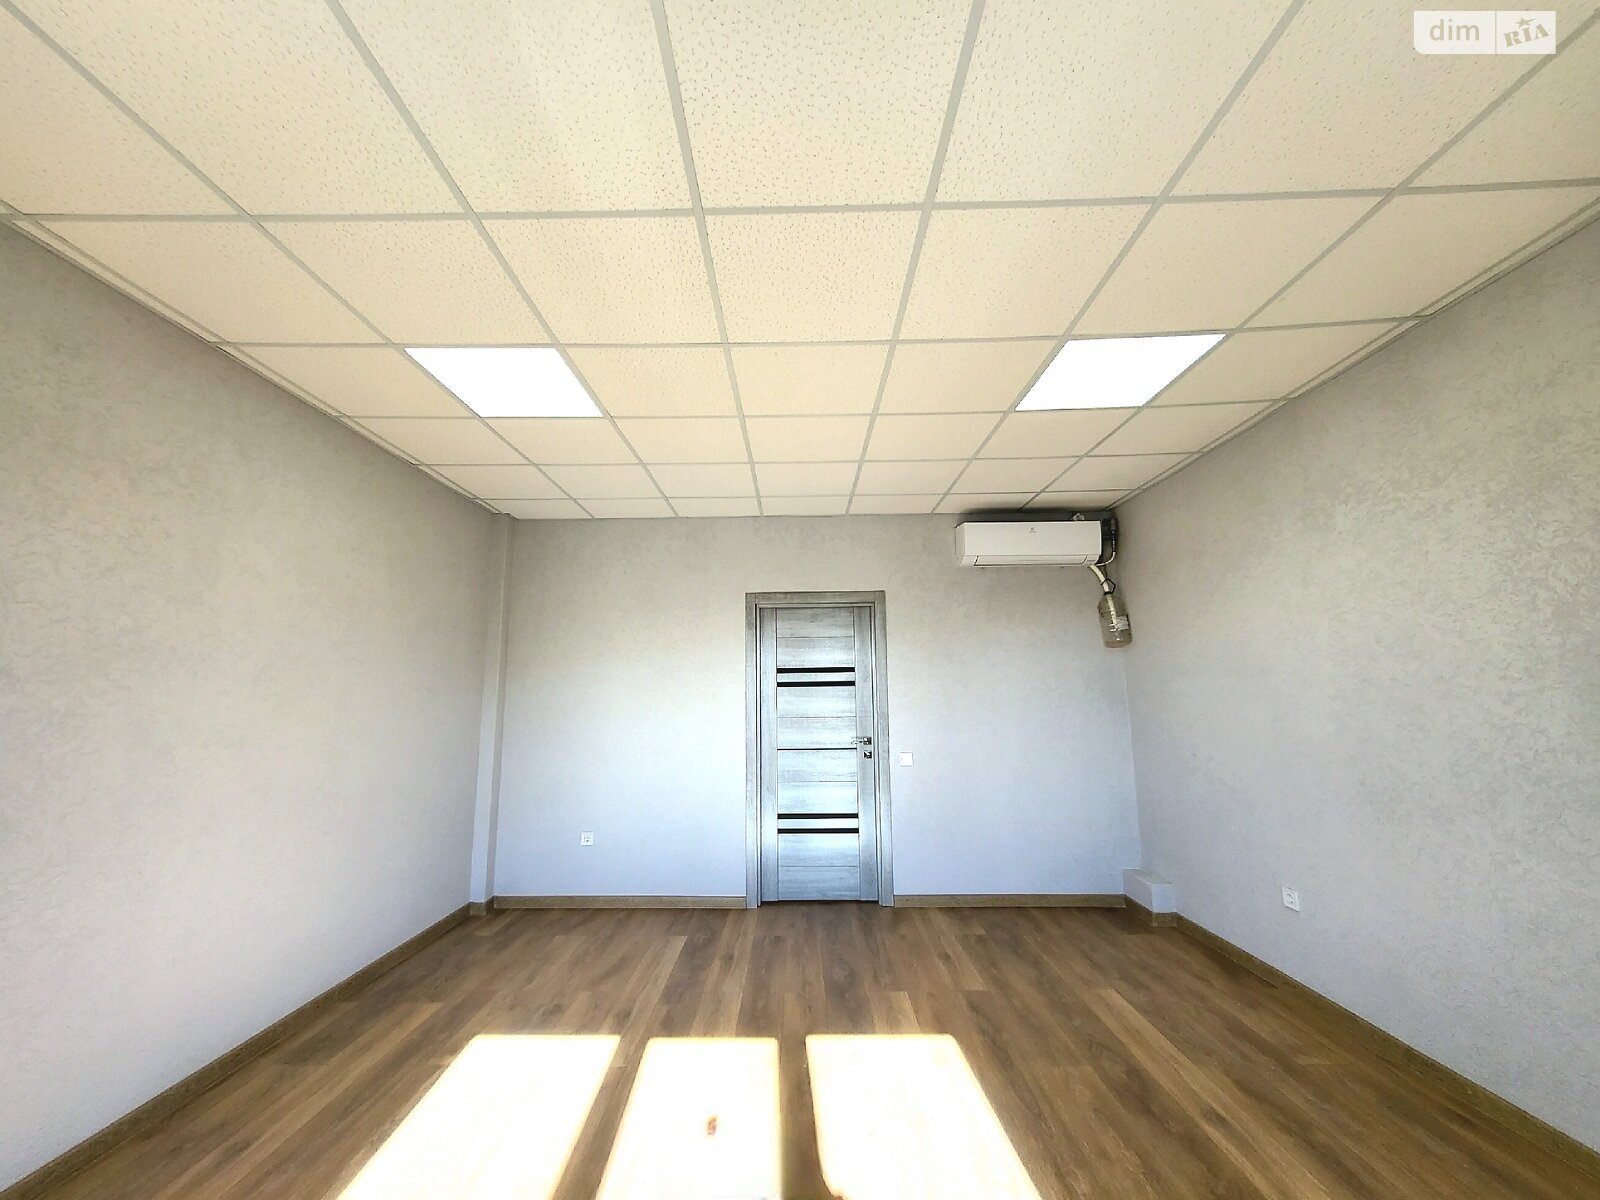 Оренда офісного приміщення в Якушинцях, Хмельницьке шосе, приміщень - 7, поверх - 2 фото 1